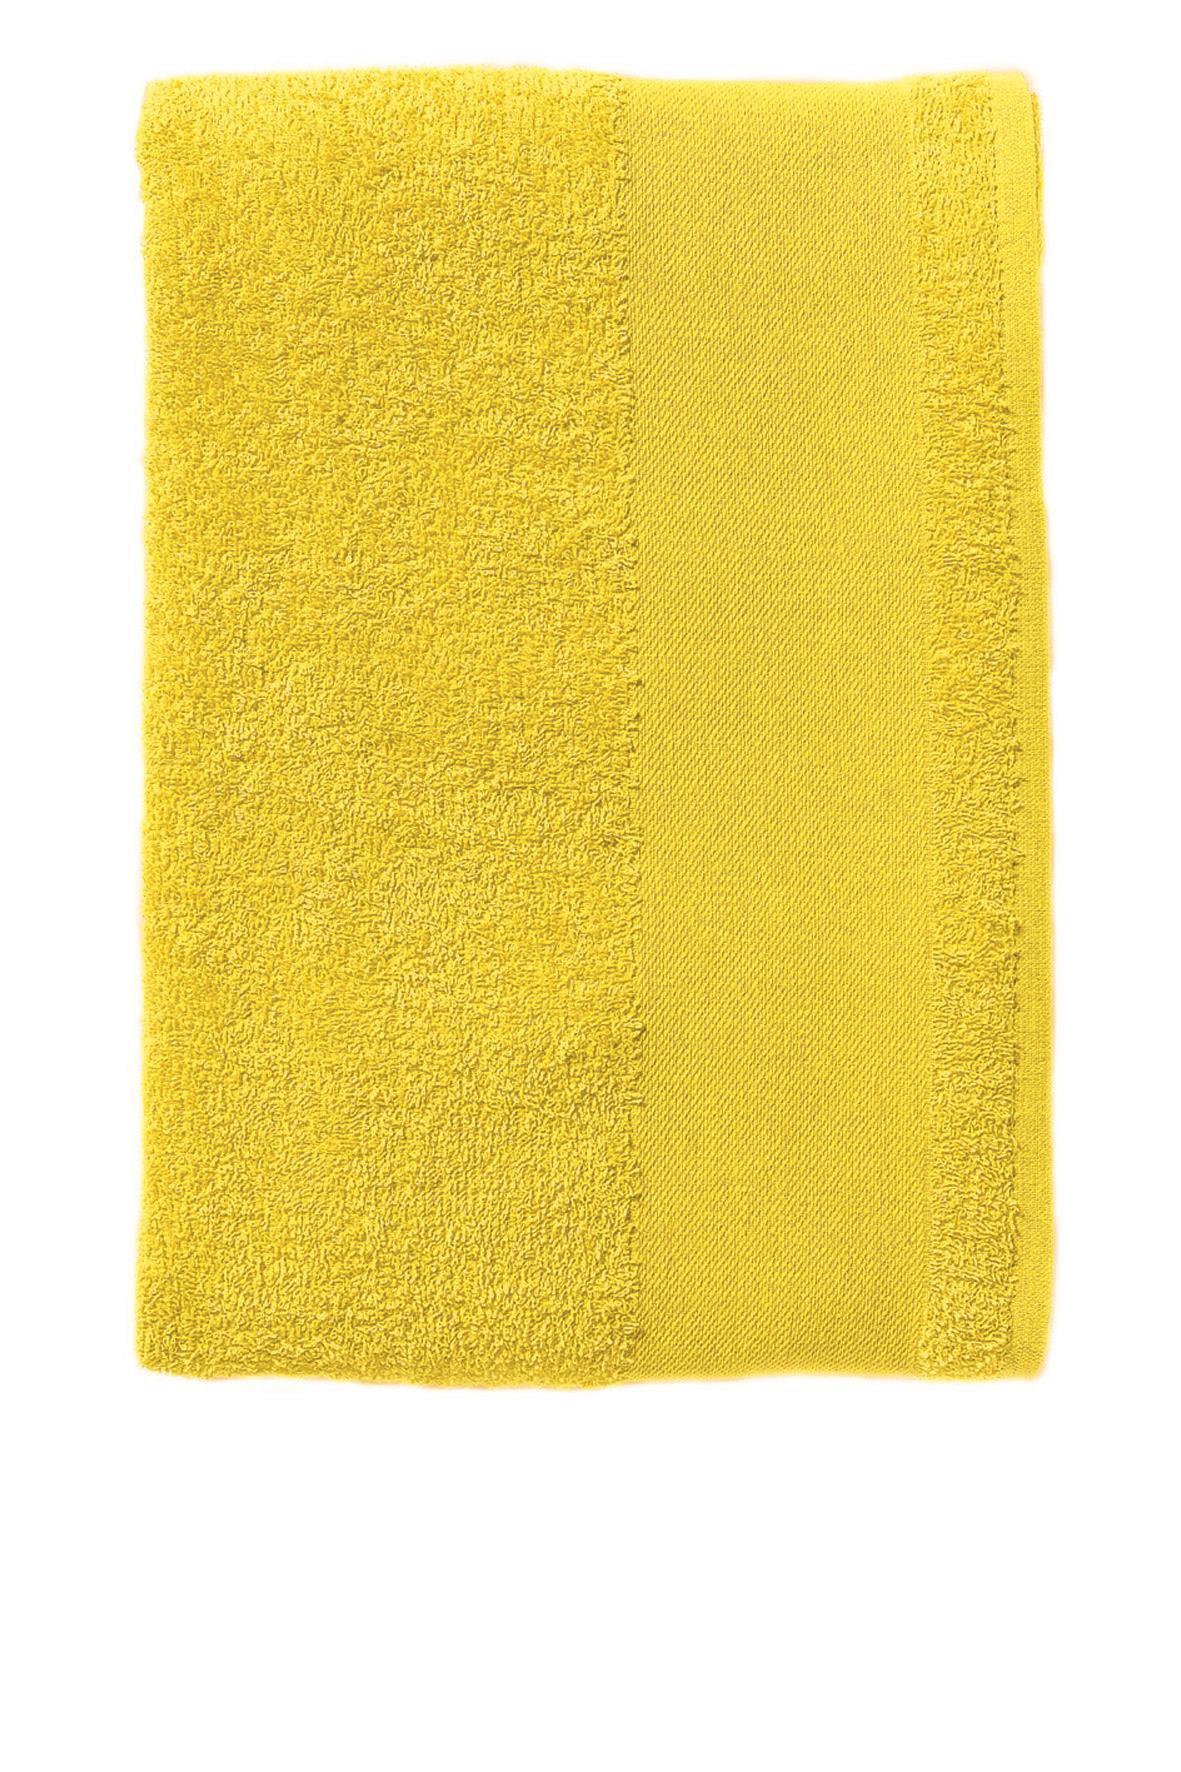 Handoeken lemon geel handdoek diverse maten strandlaken.